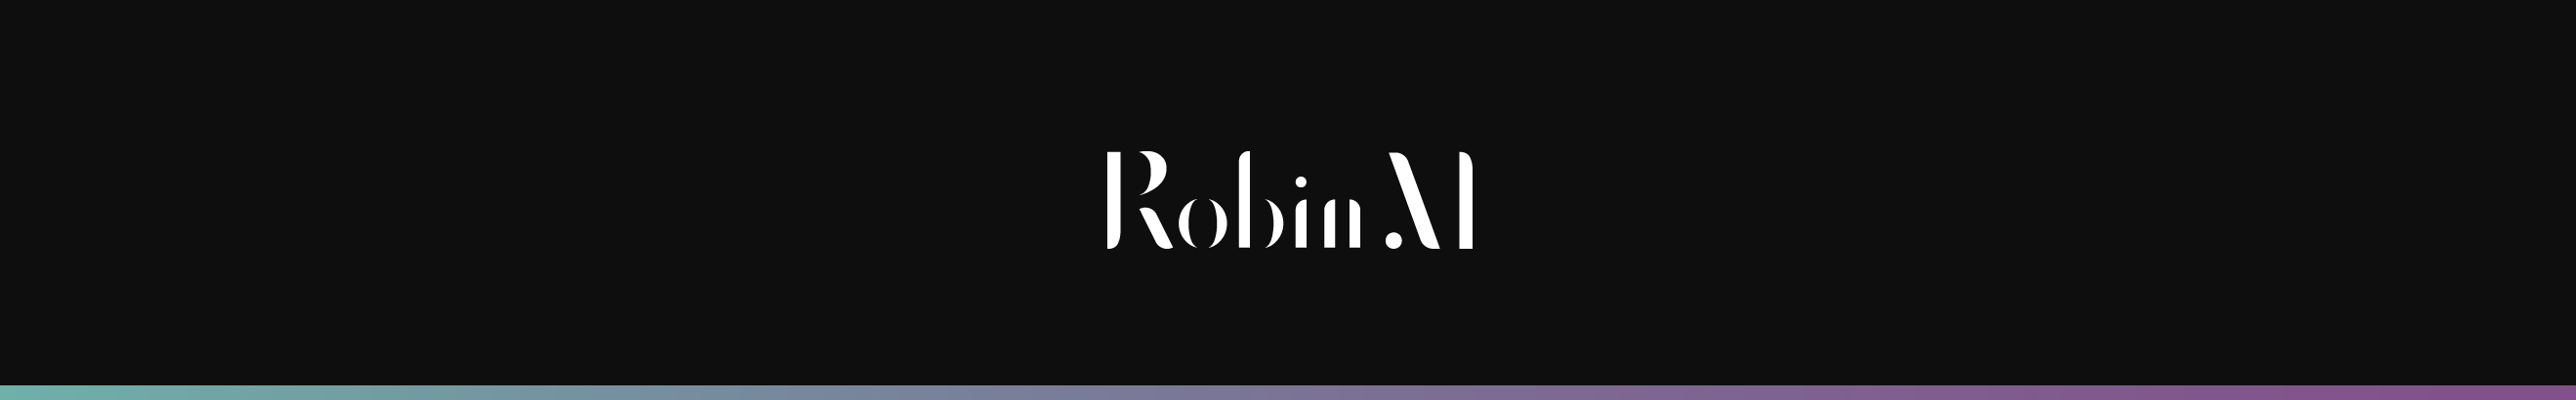 Robin Metzinger's profile banner